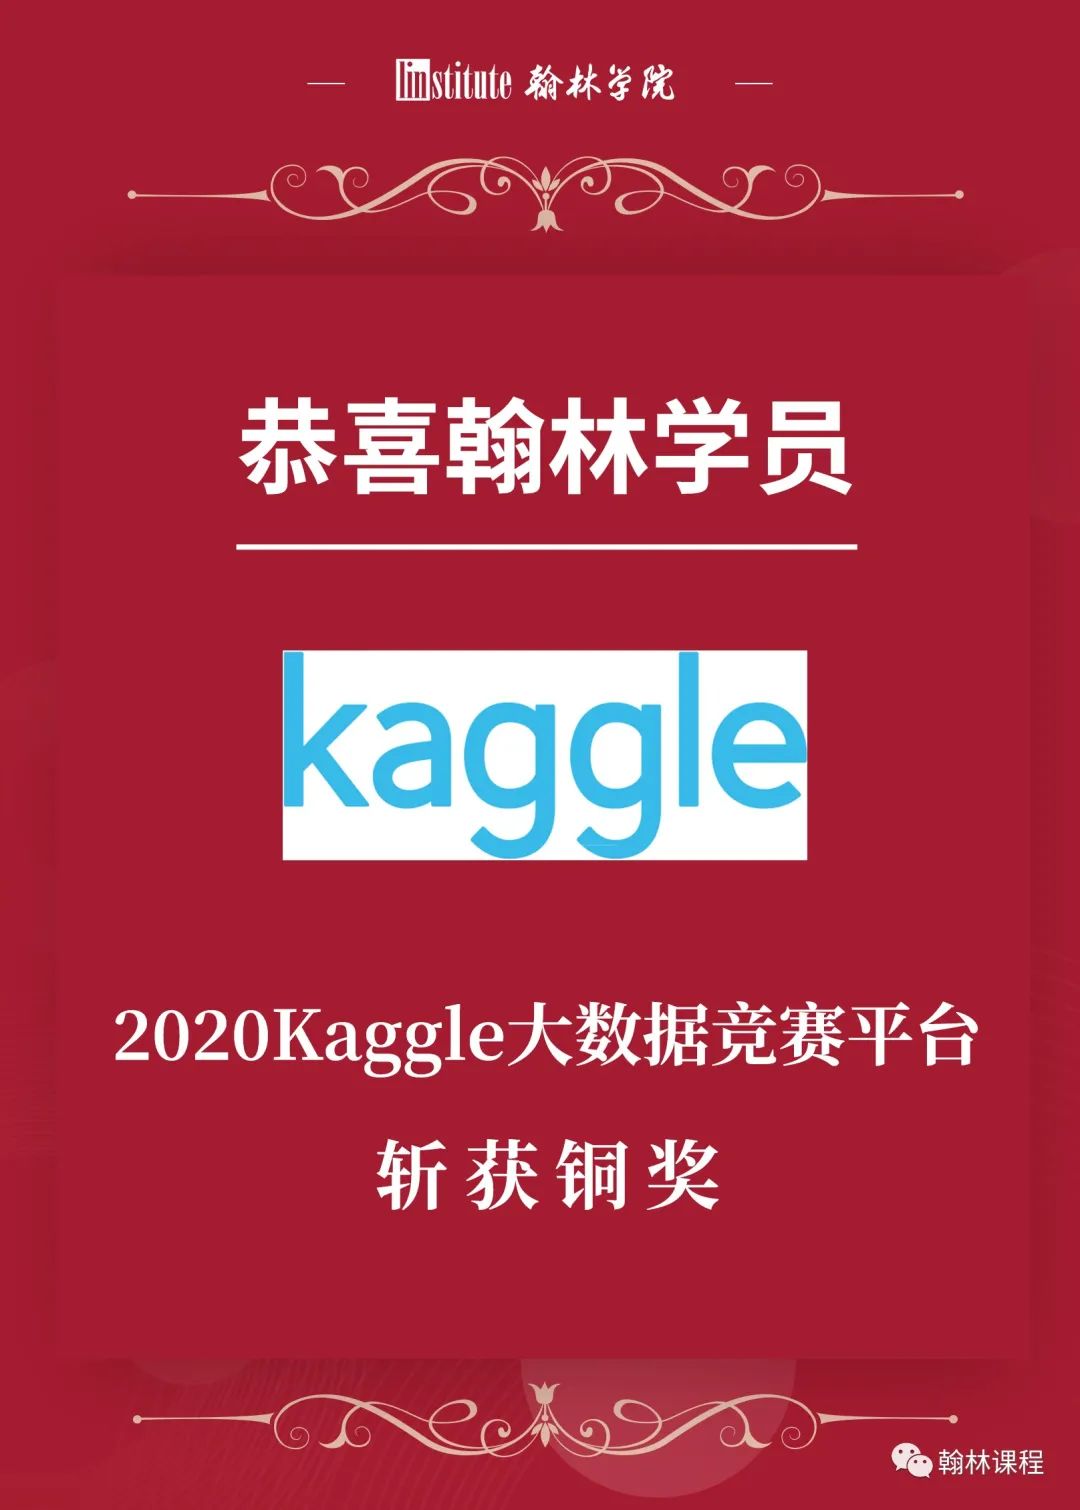 战绩 | 恭喜翰林学员在Kaggle大平台学术活动中斩获铜奖！再接再厉！